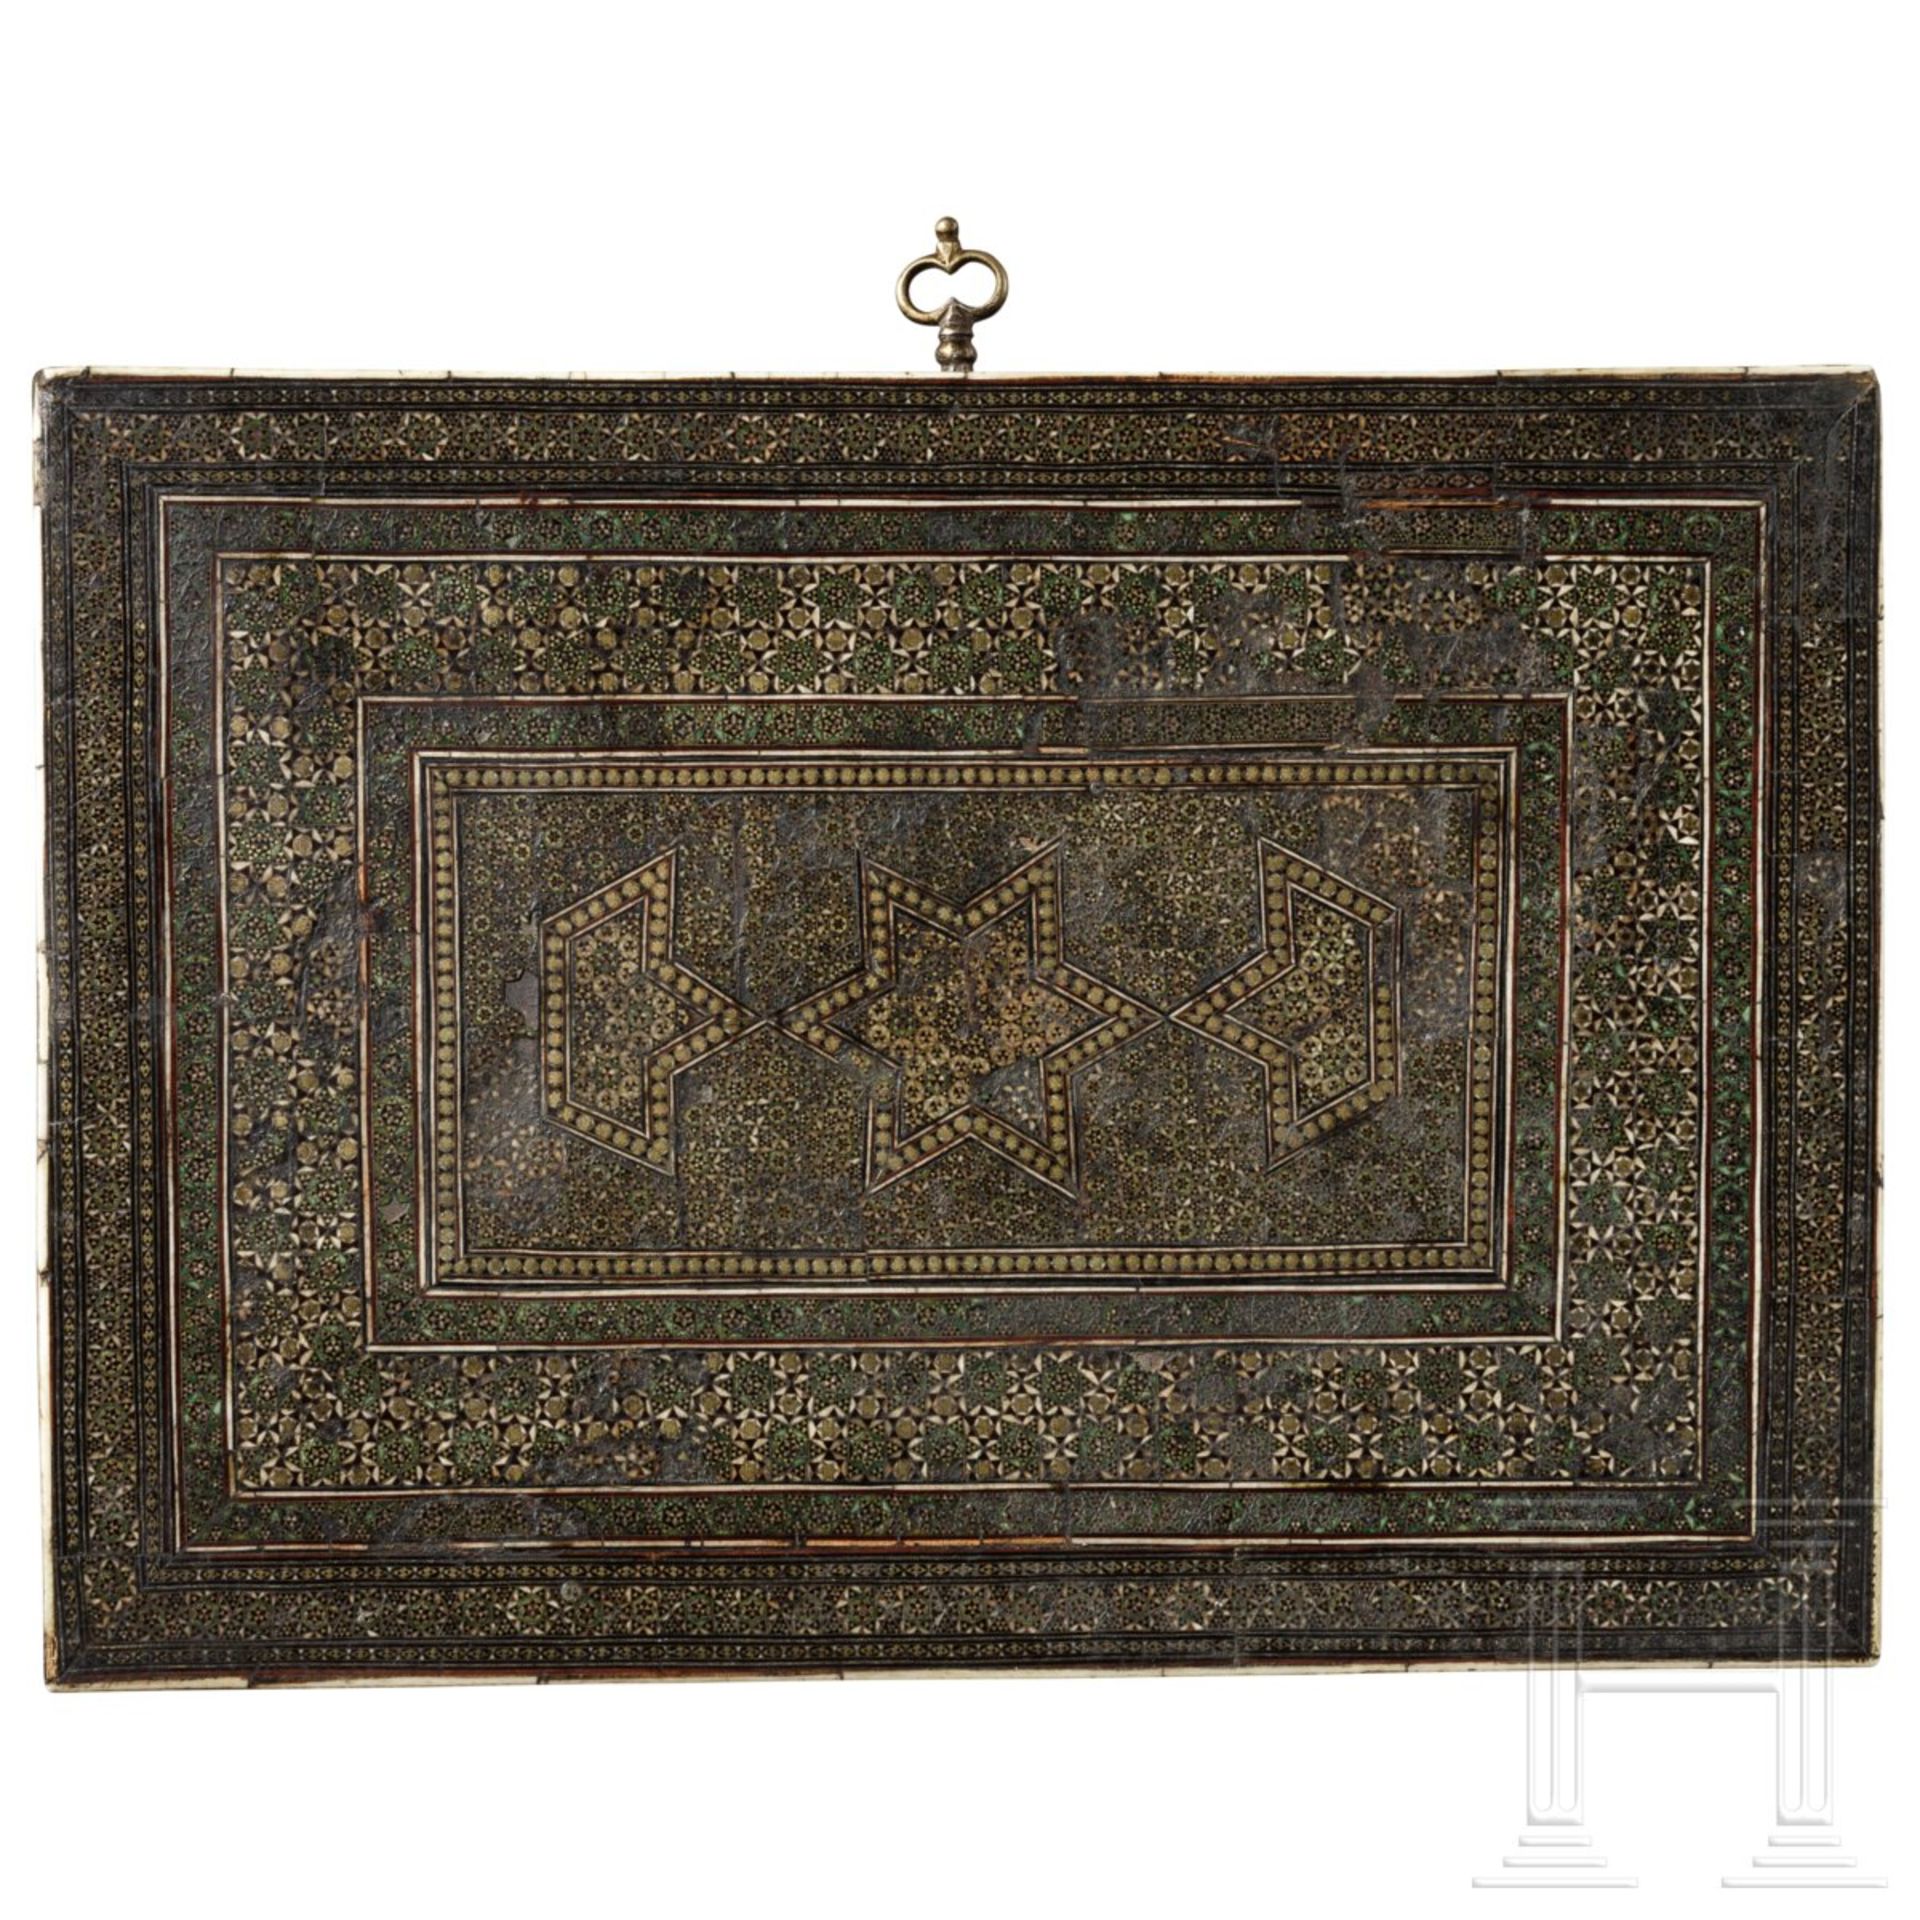 Kabinettkästchen mit reichem Shiras-Dekor, Persien, 1. Hälfte 19. Jhdt. - Image 4 of 5